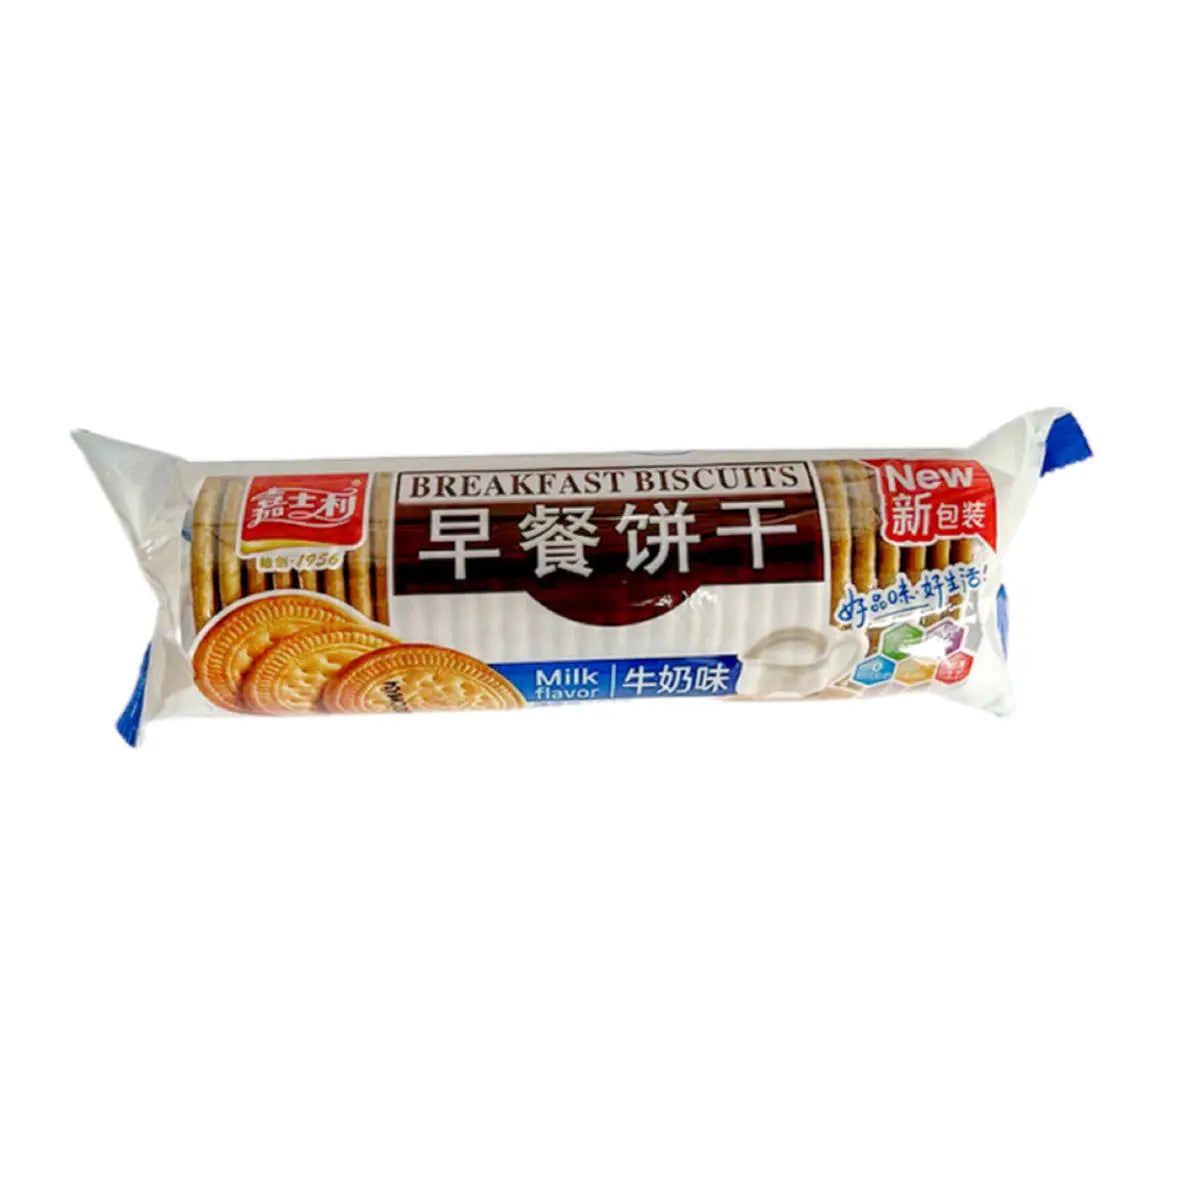 开平嘉士利早餐饼干167g牛奶红枣原味营养代餐饱腹零食 嘉士利